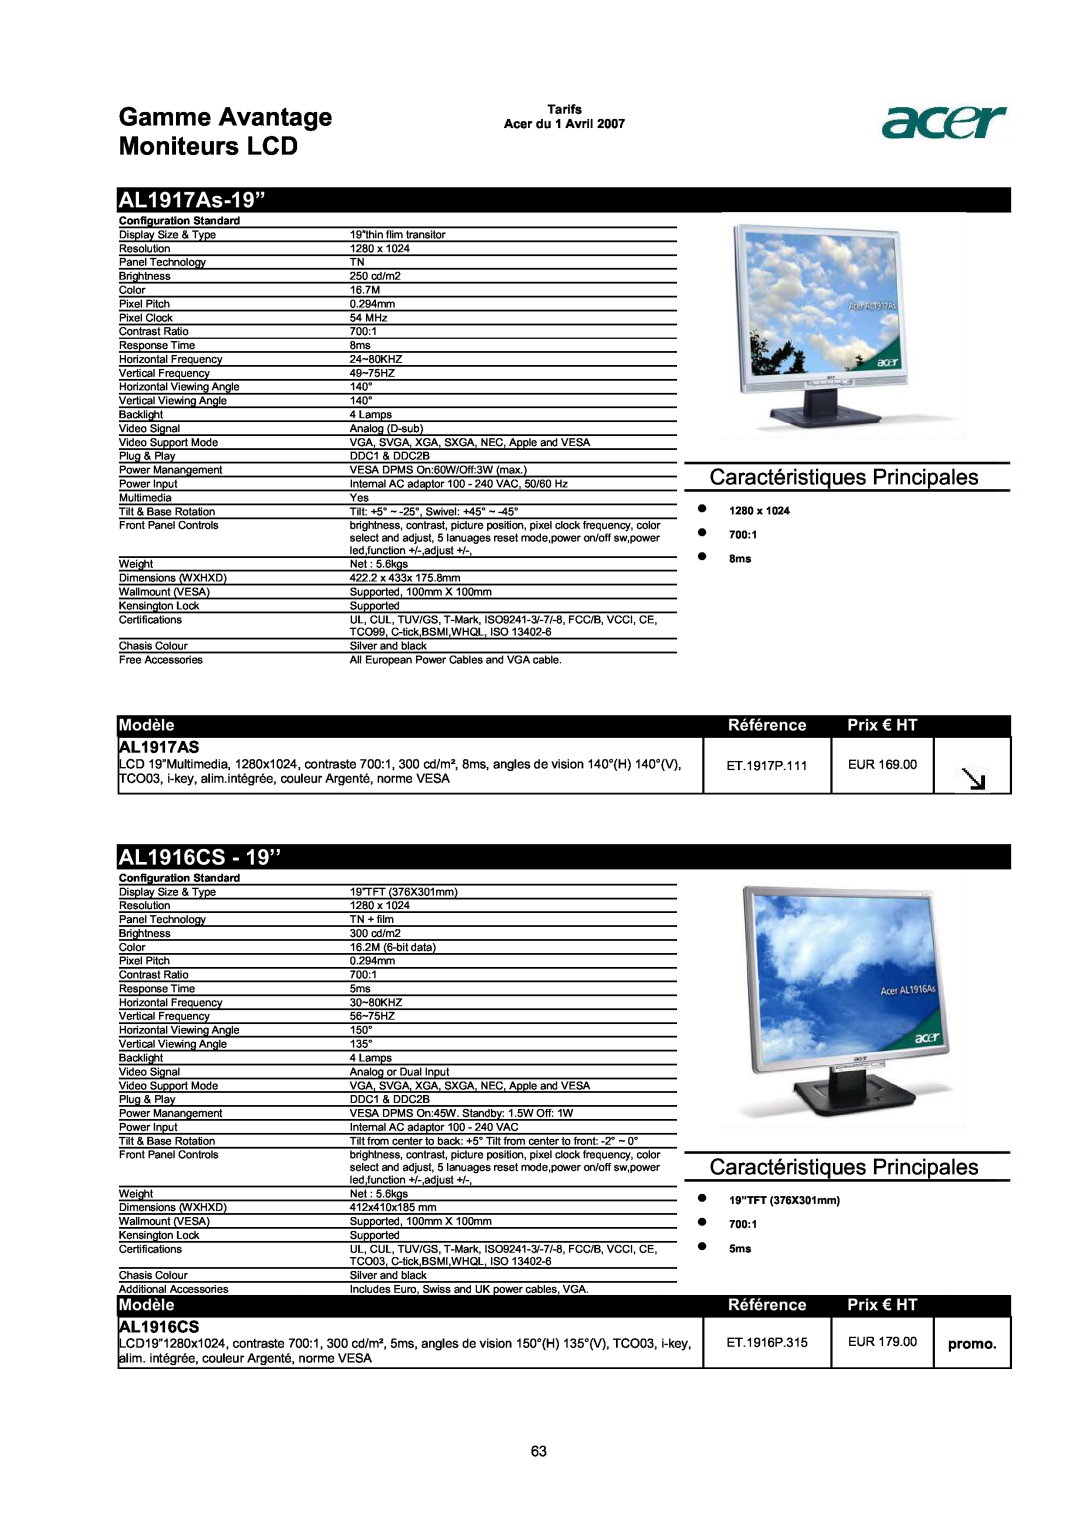 Acer AC713B-17 AL1917As-19”, AL1916CS - 19’’, AL1917AS, Gamme Avantage Moniteurs LCD, Caractéristiques Principales, Modèle 